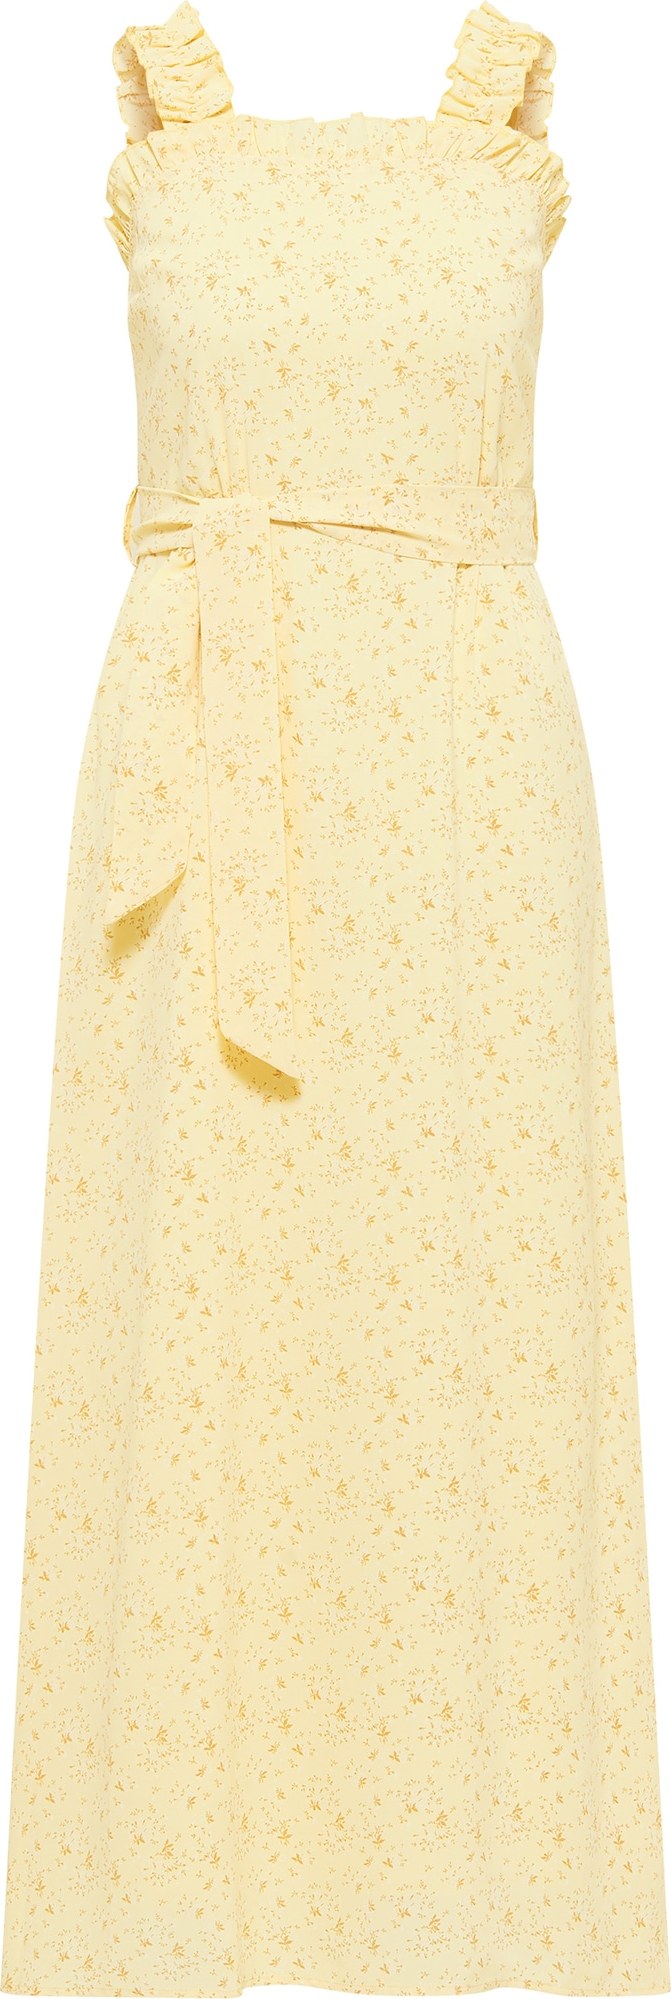 MYMO Letní šaty zlatě žlutá / pastelově žlutá